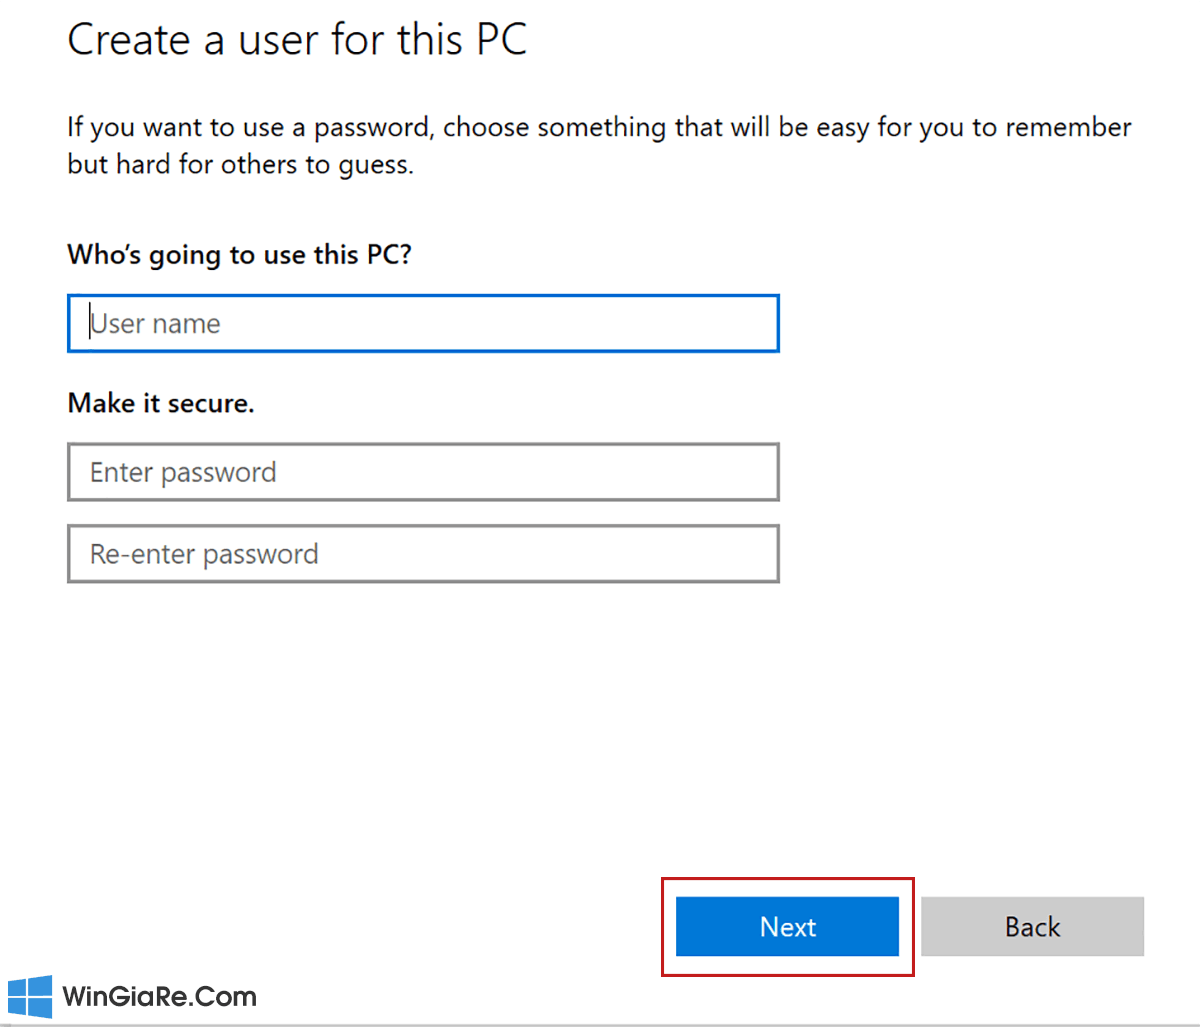 Cách thoát tài khoản Microsoft trên Windows 10, Win 11 đơn giản